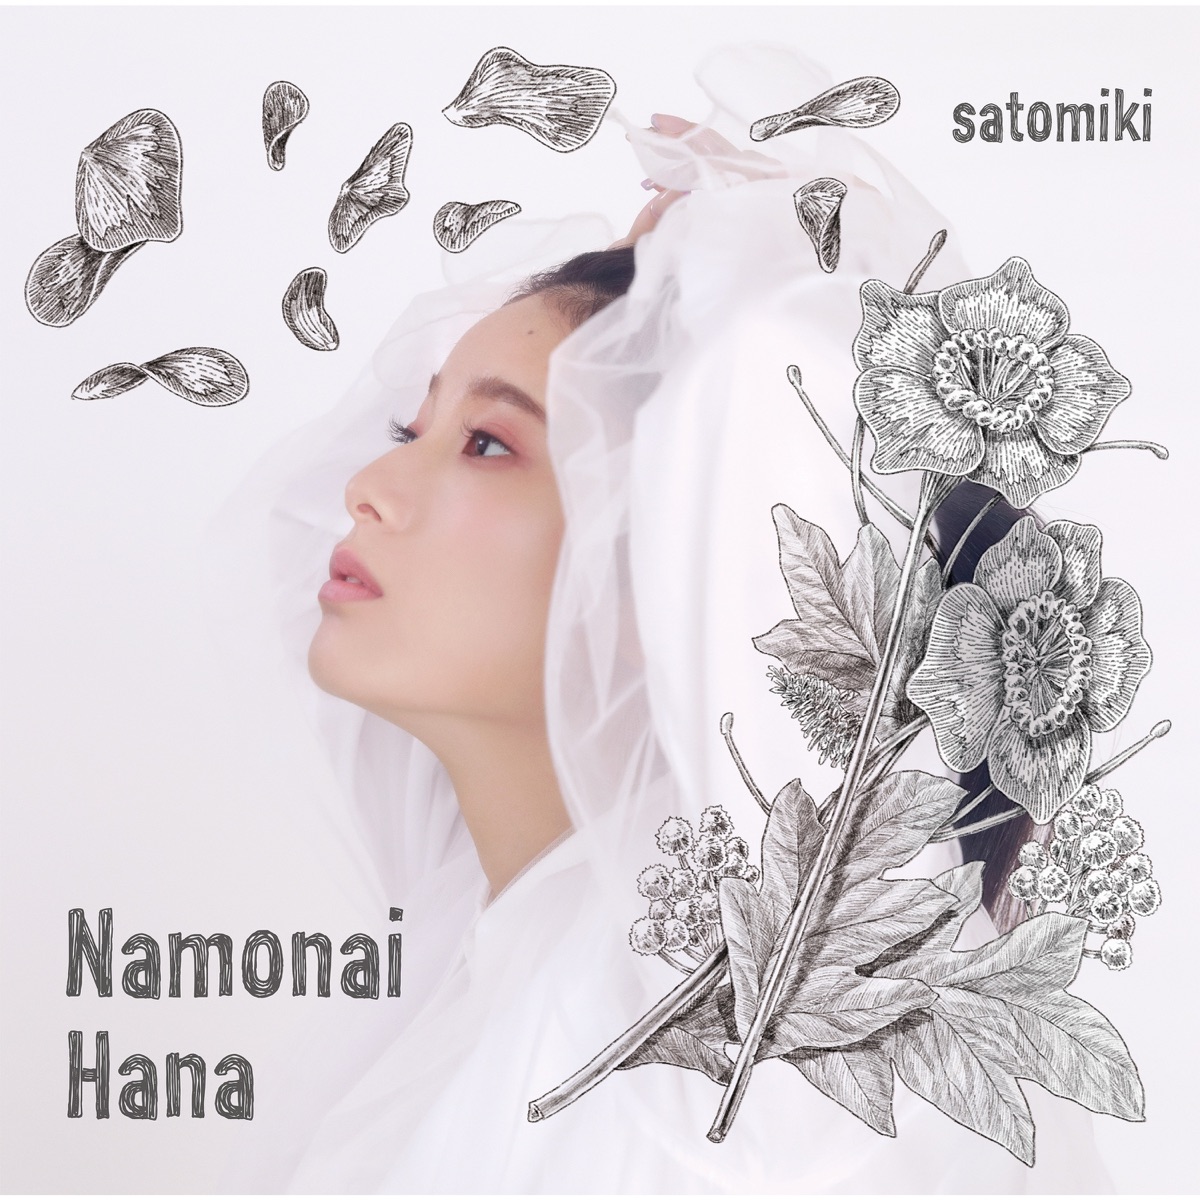 Cover for『Miki Sato - Namonai Hana』from the release『Namonai Hana』